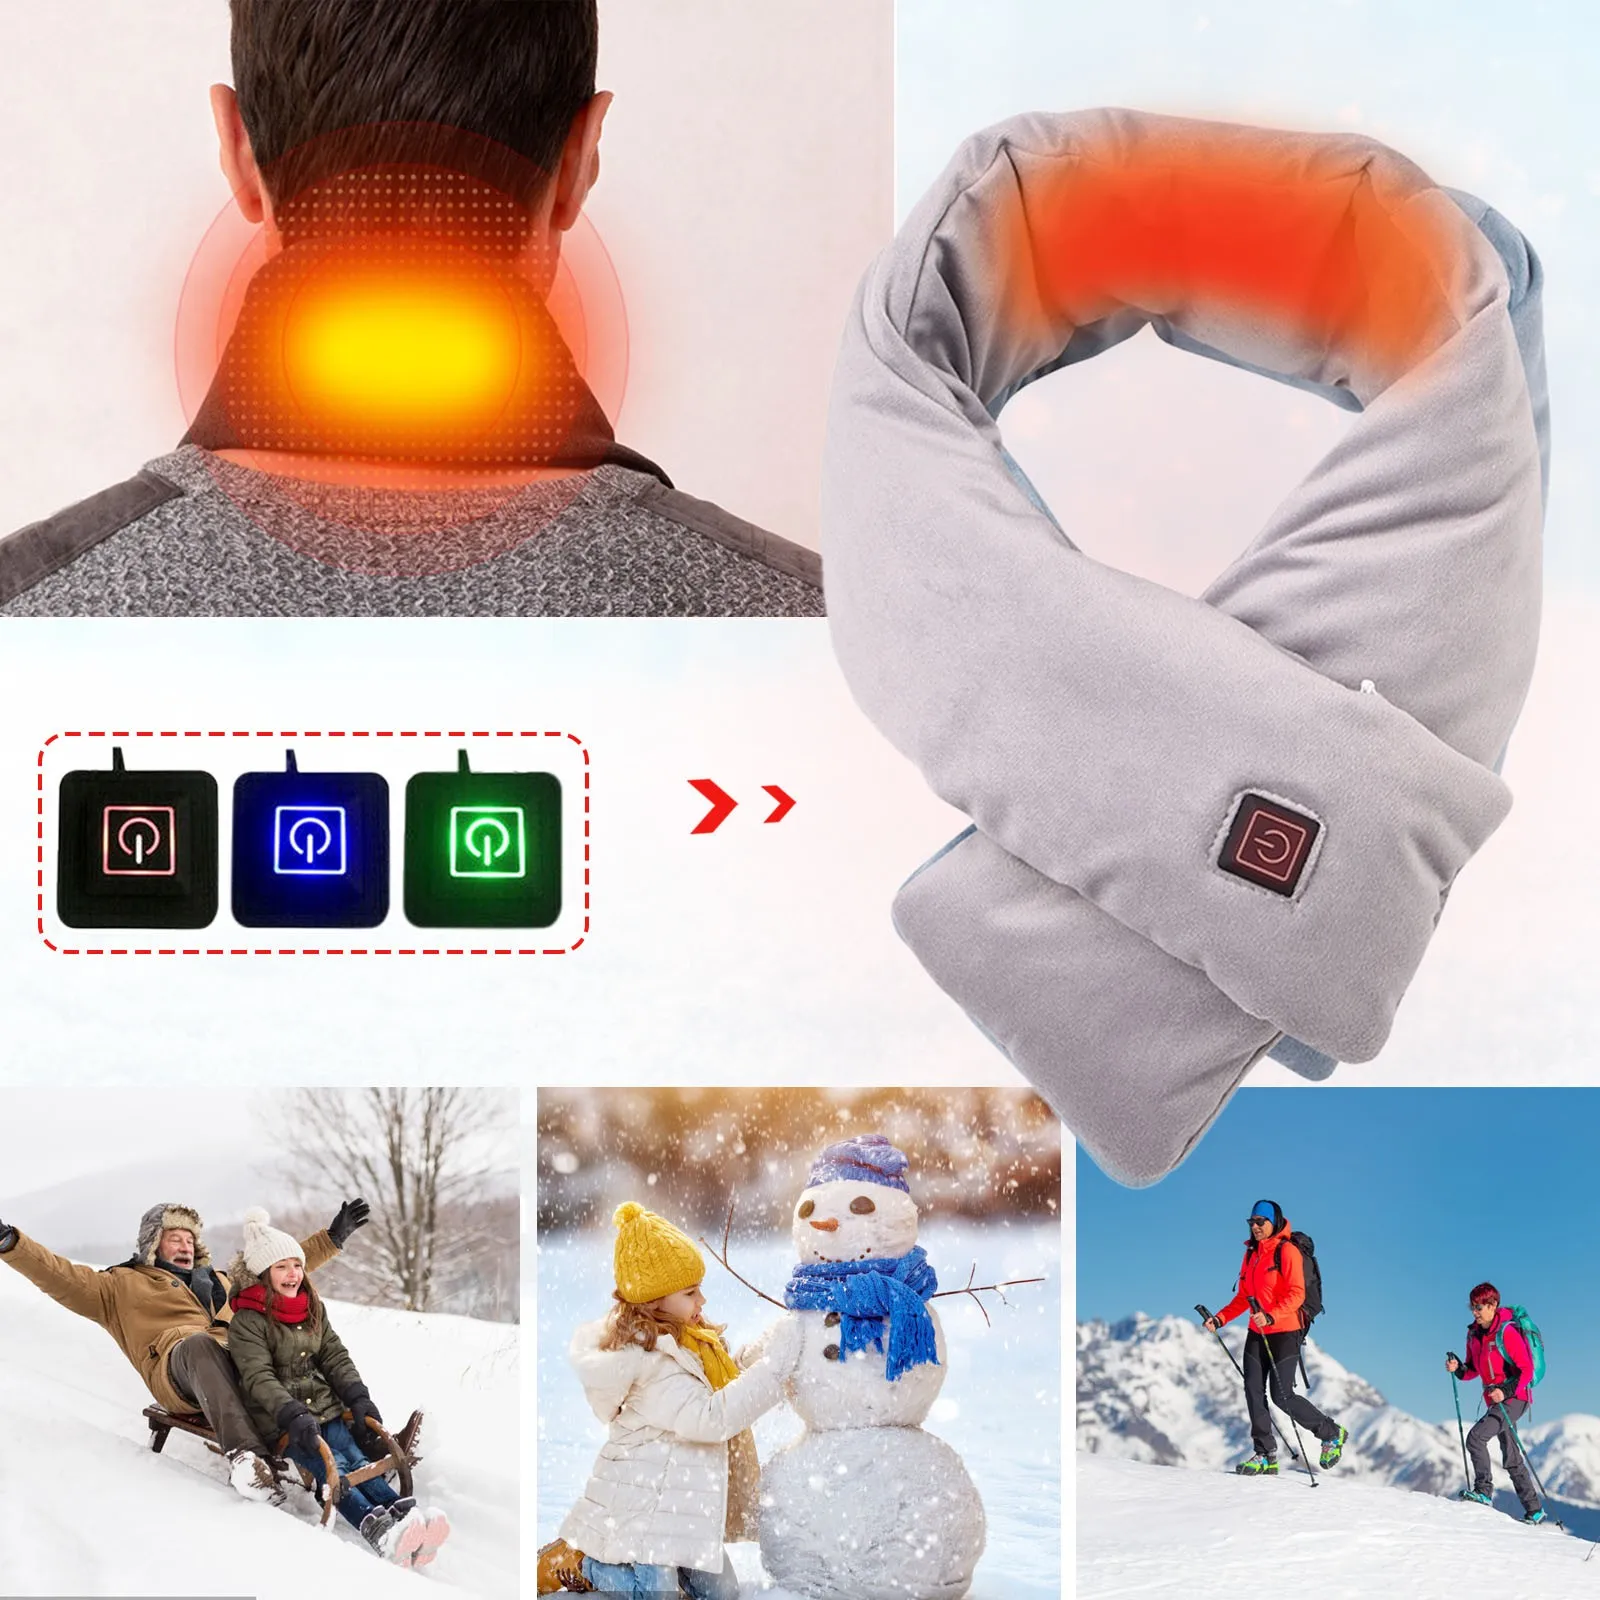 WarmWrap™ Wiederaufladbarer beheizter warmer Schal